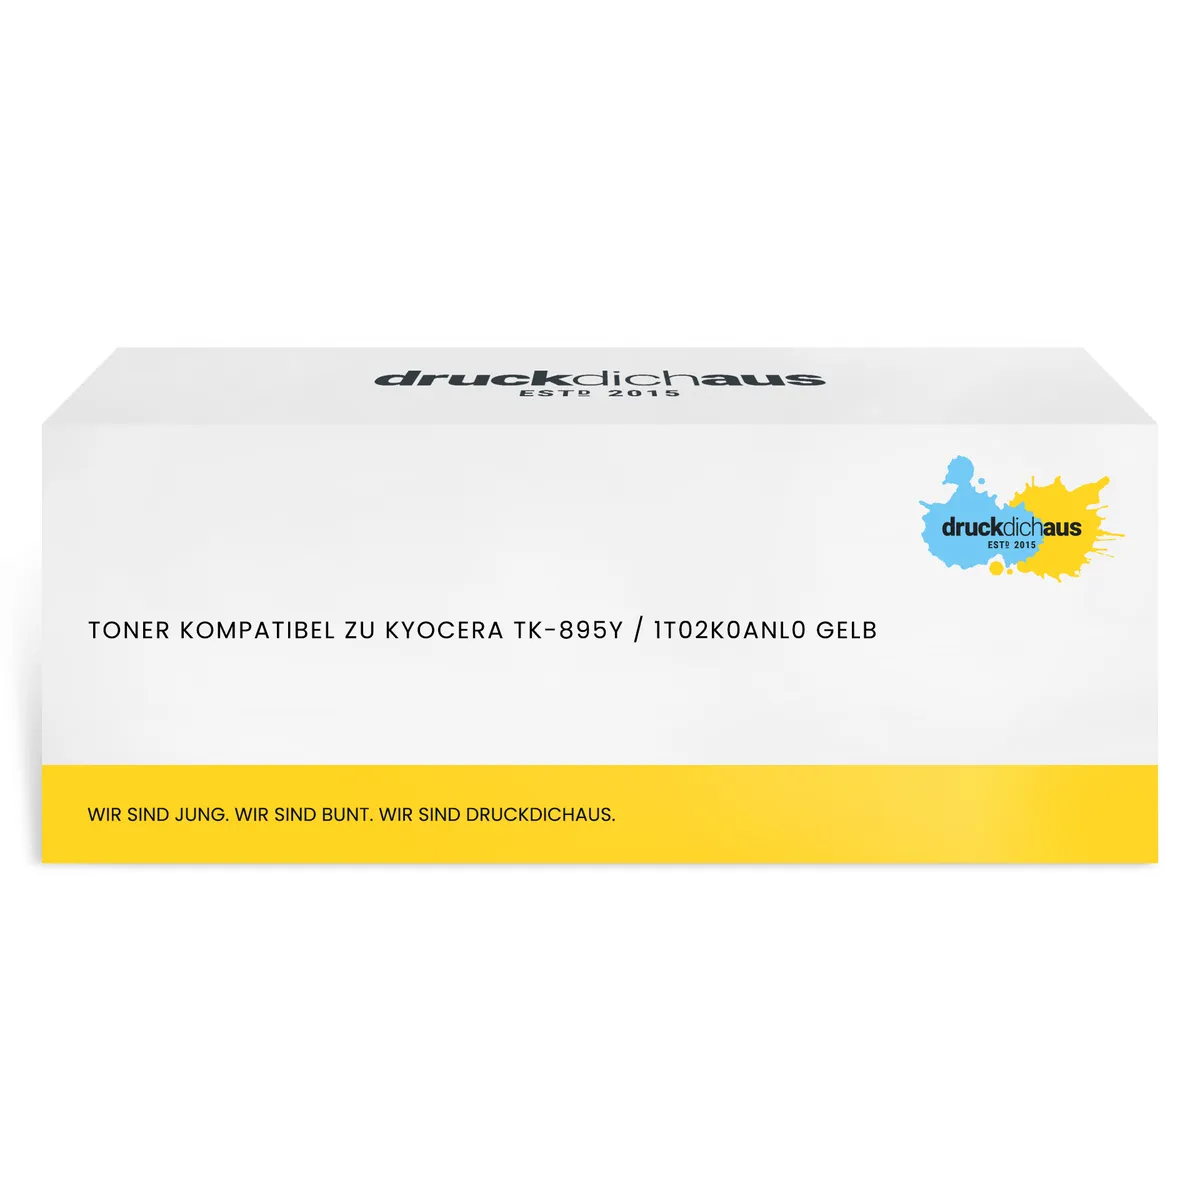 Toner kompatibel zu Kyocera TK-895Y / 1T02K0ANL0 gelb